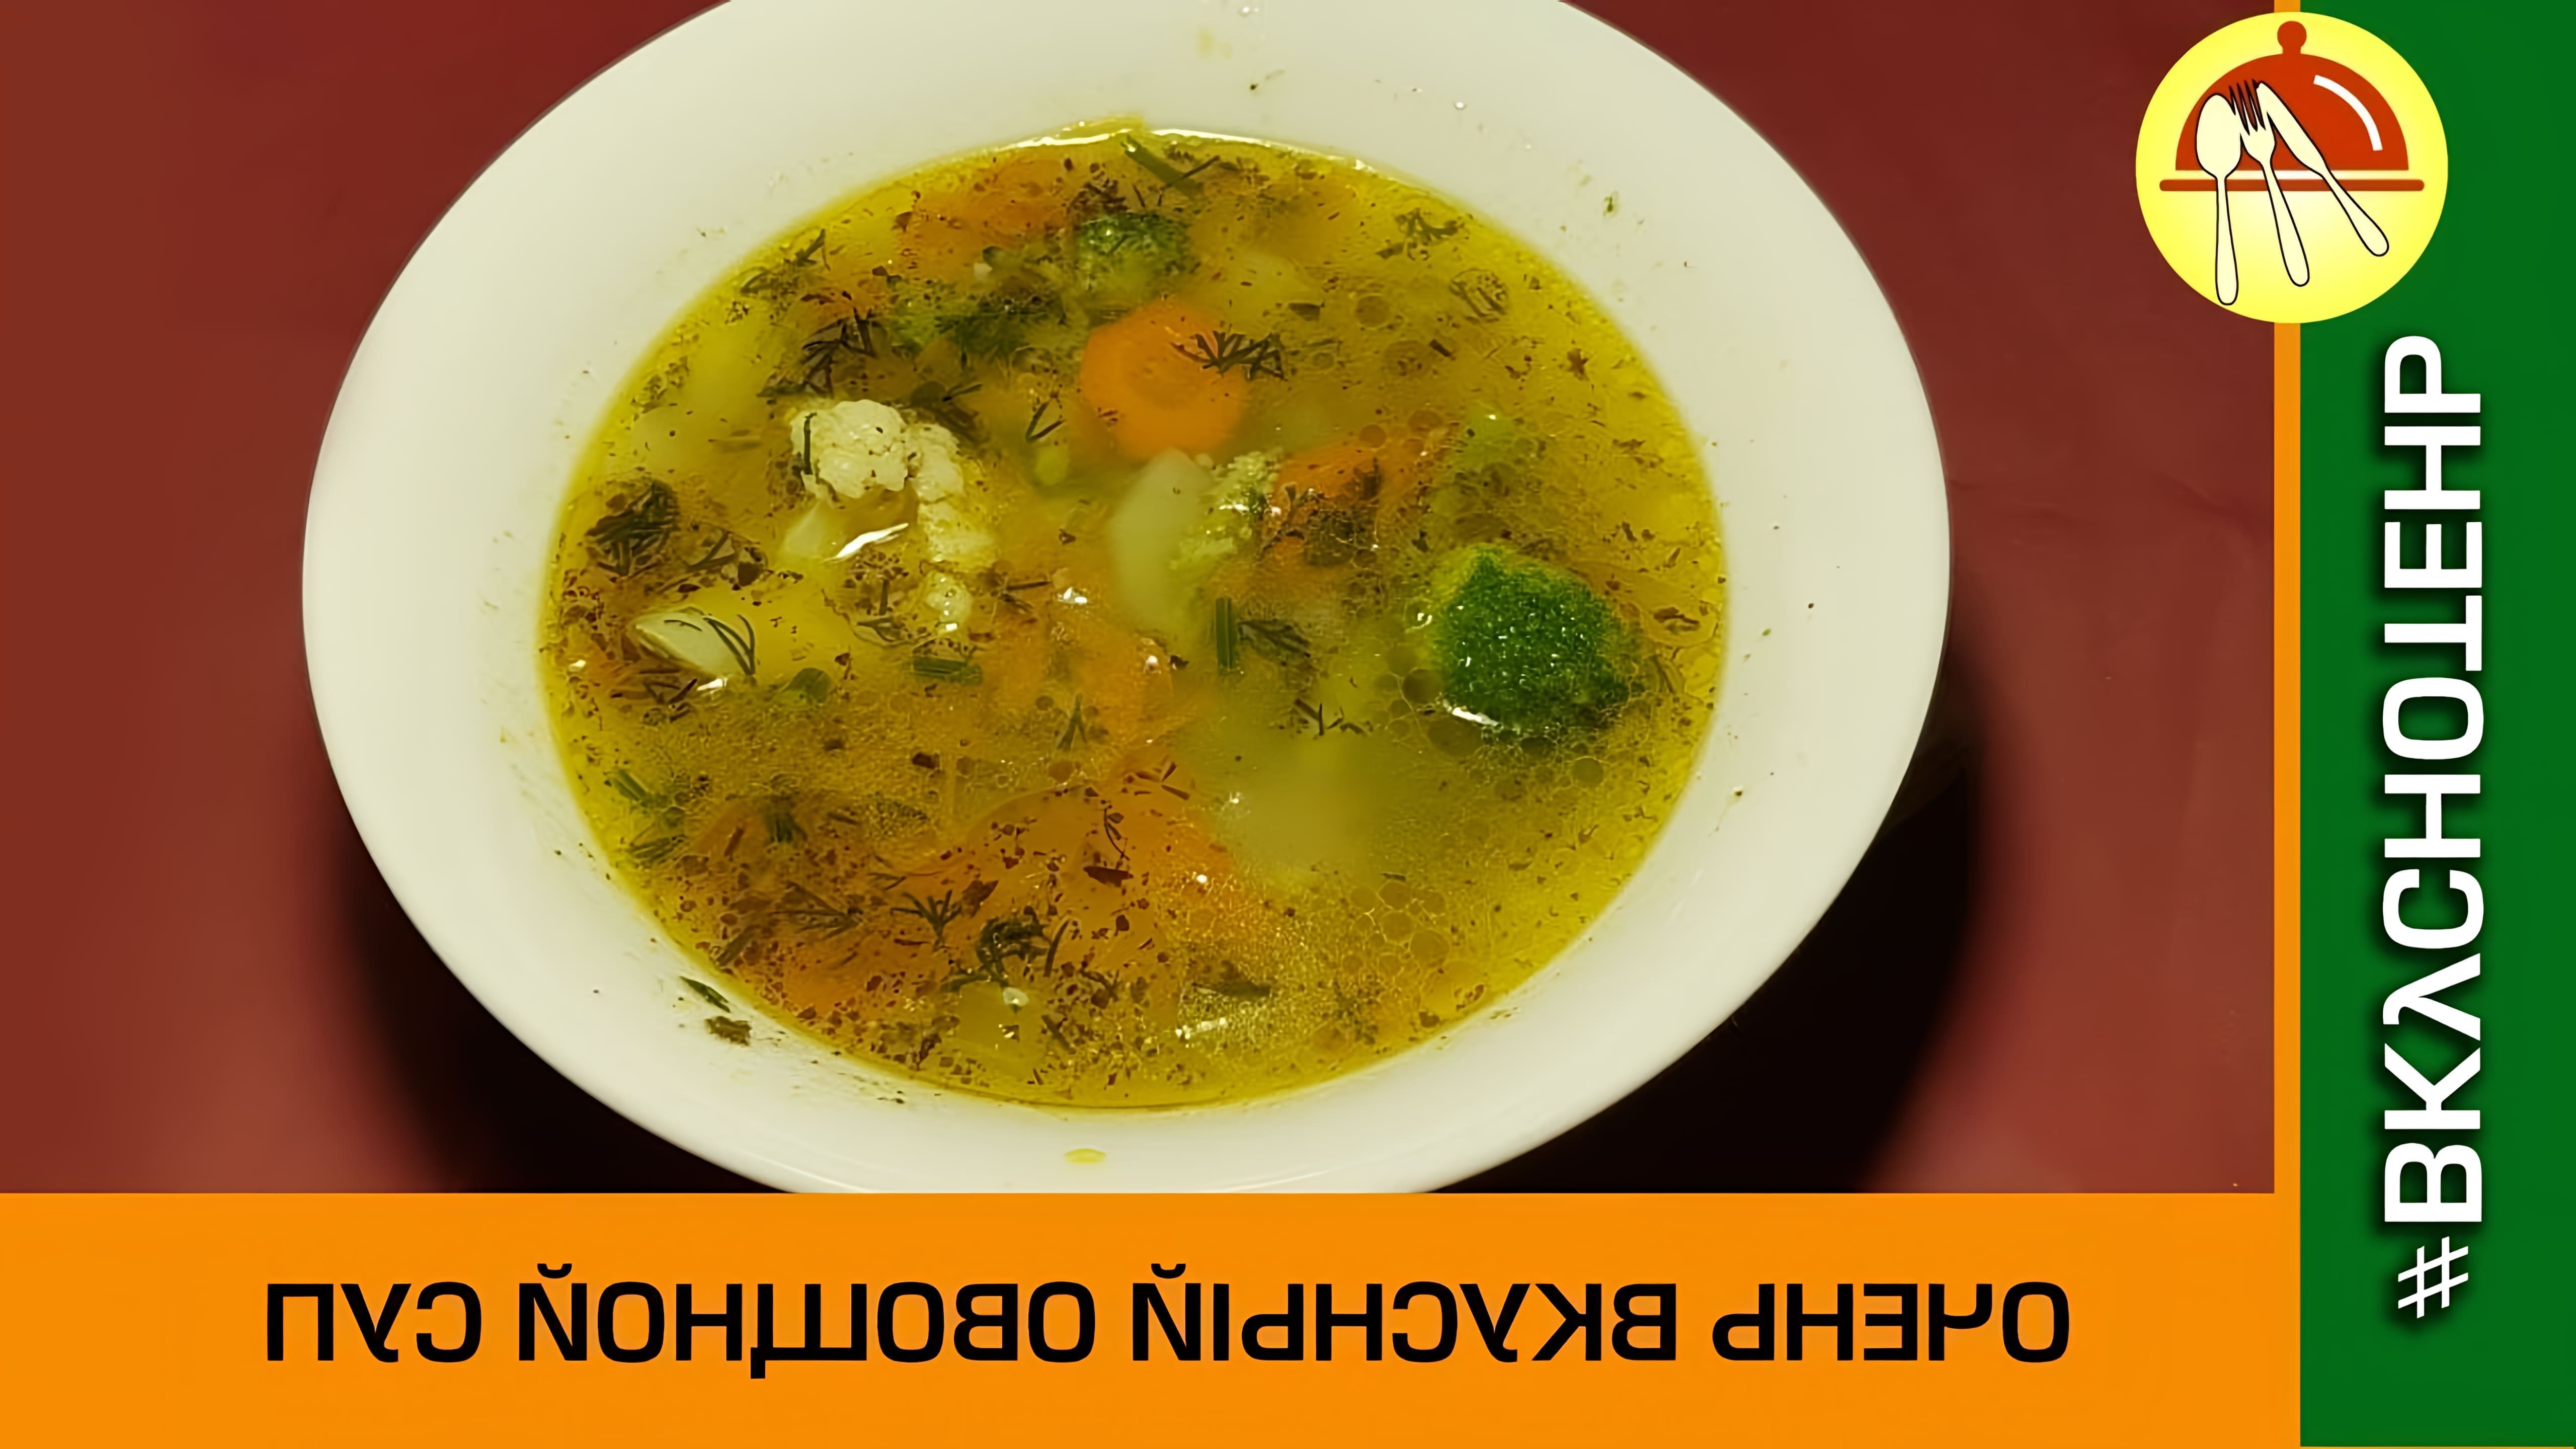 В этом видео демонстрируется рецепт овощного супа с цветной капустой